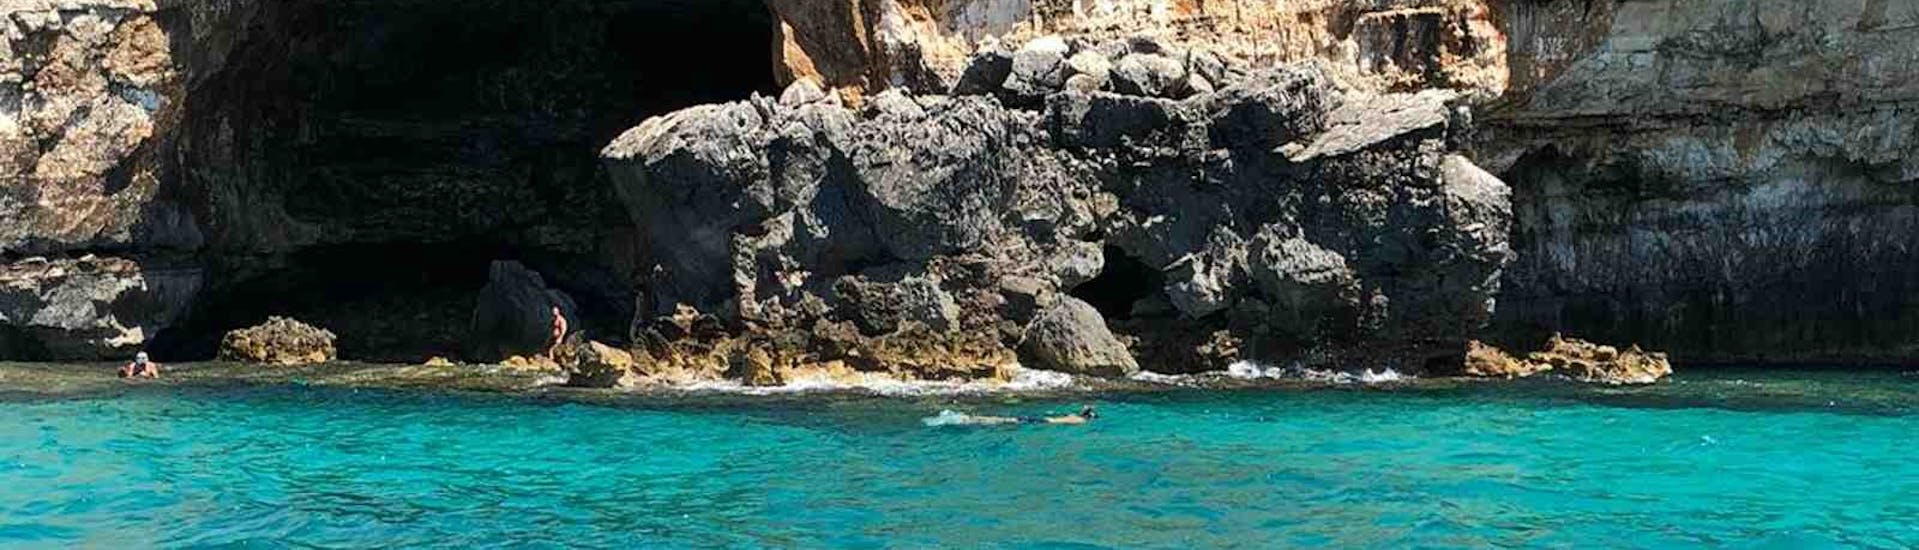 Zicht op een snorkelaar voor een grot tijdens de boottocht naar de Ionische Grotten vanuit Santa Maria di Leuca met Leuca due Mari.